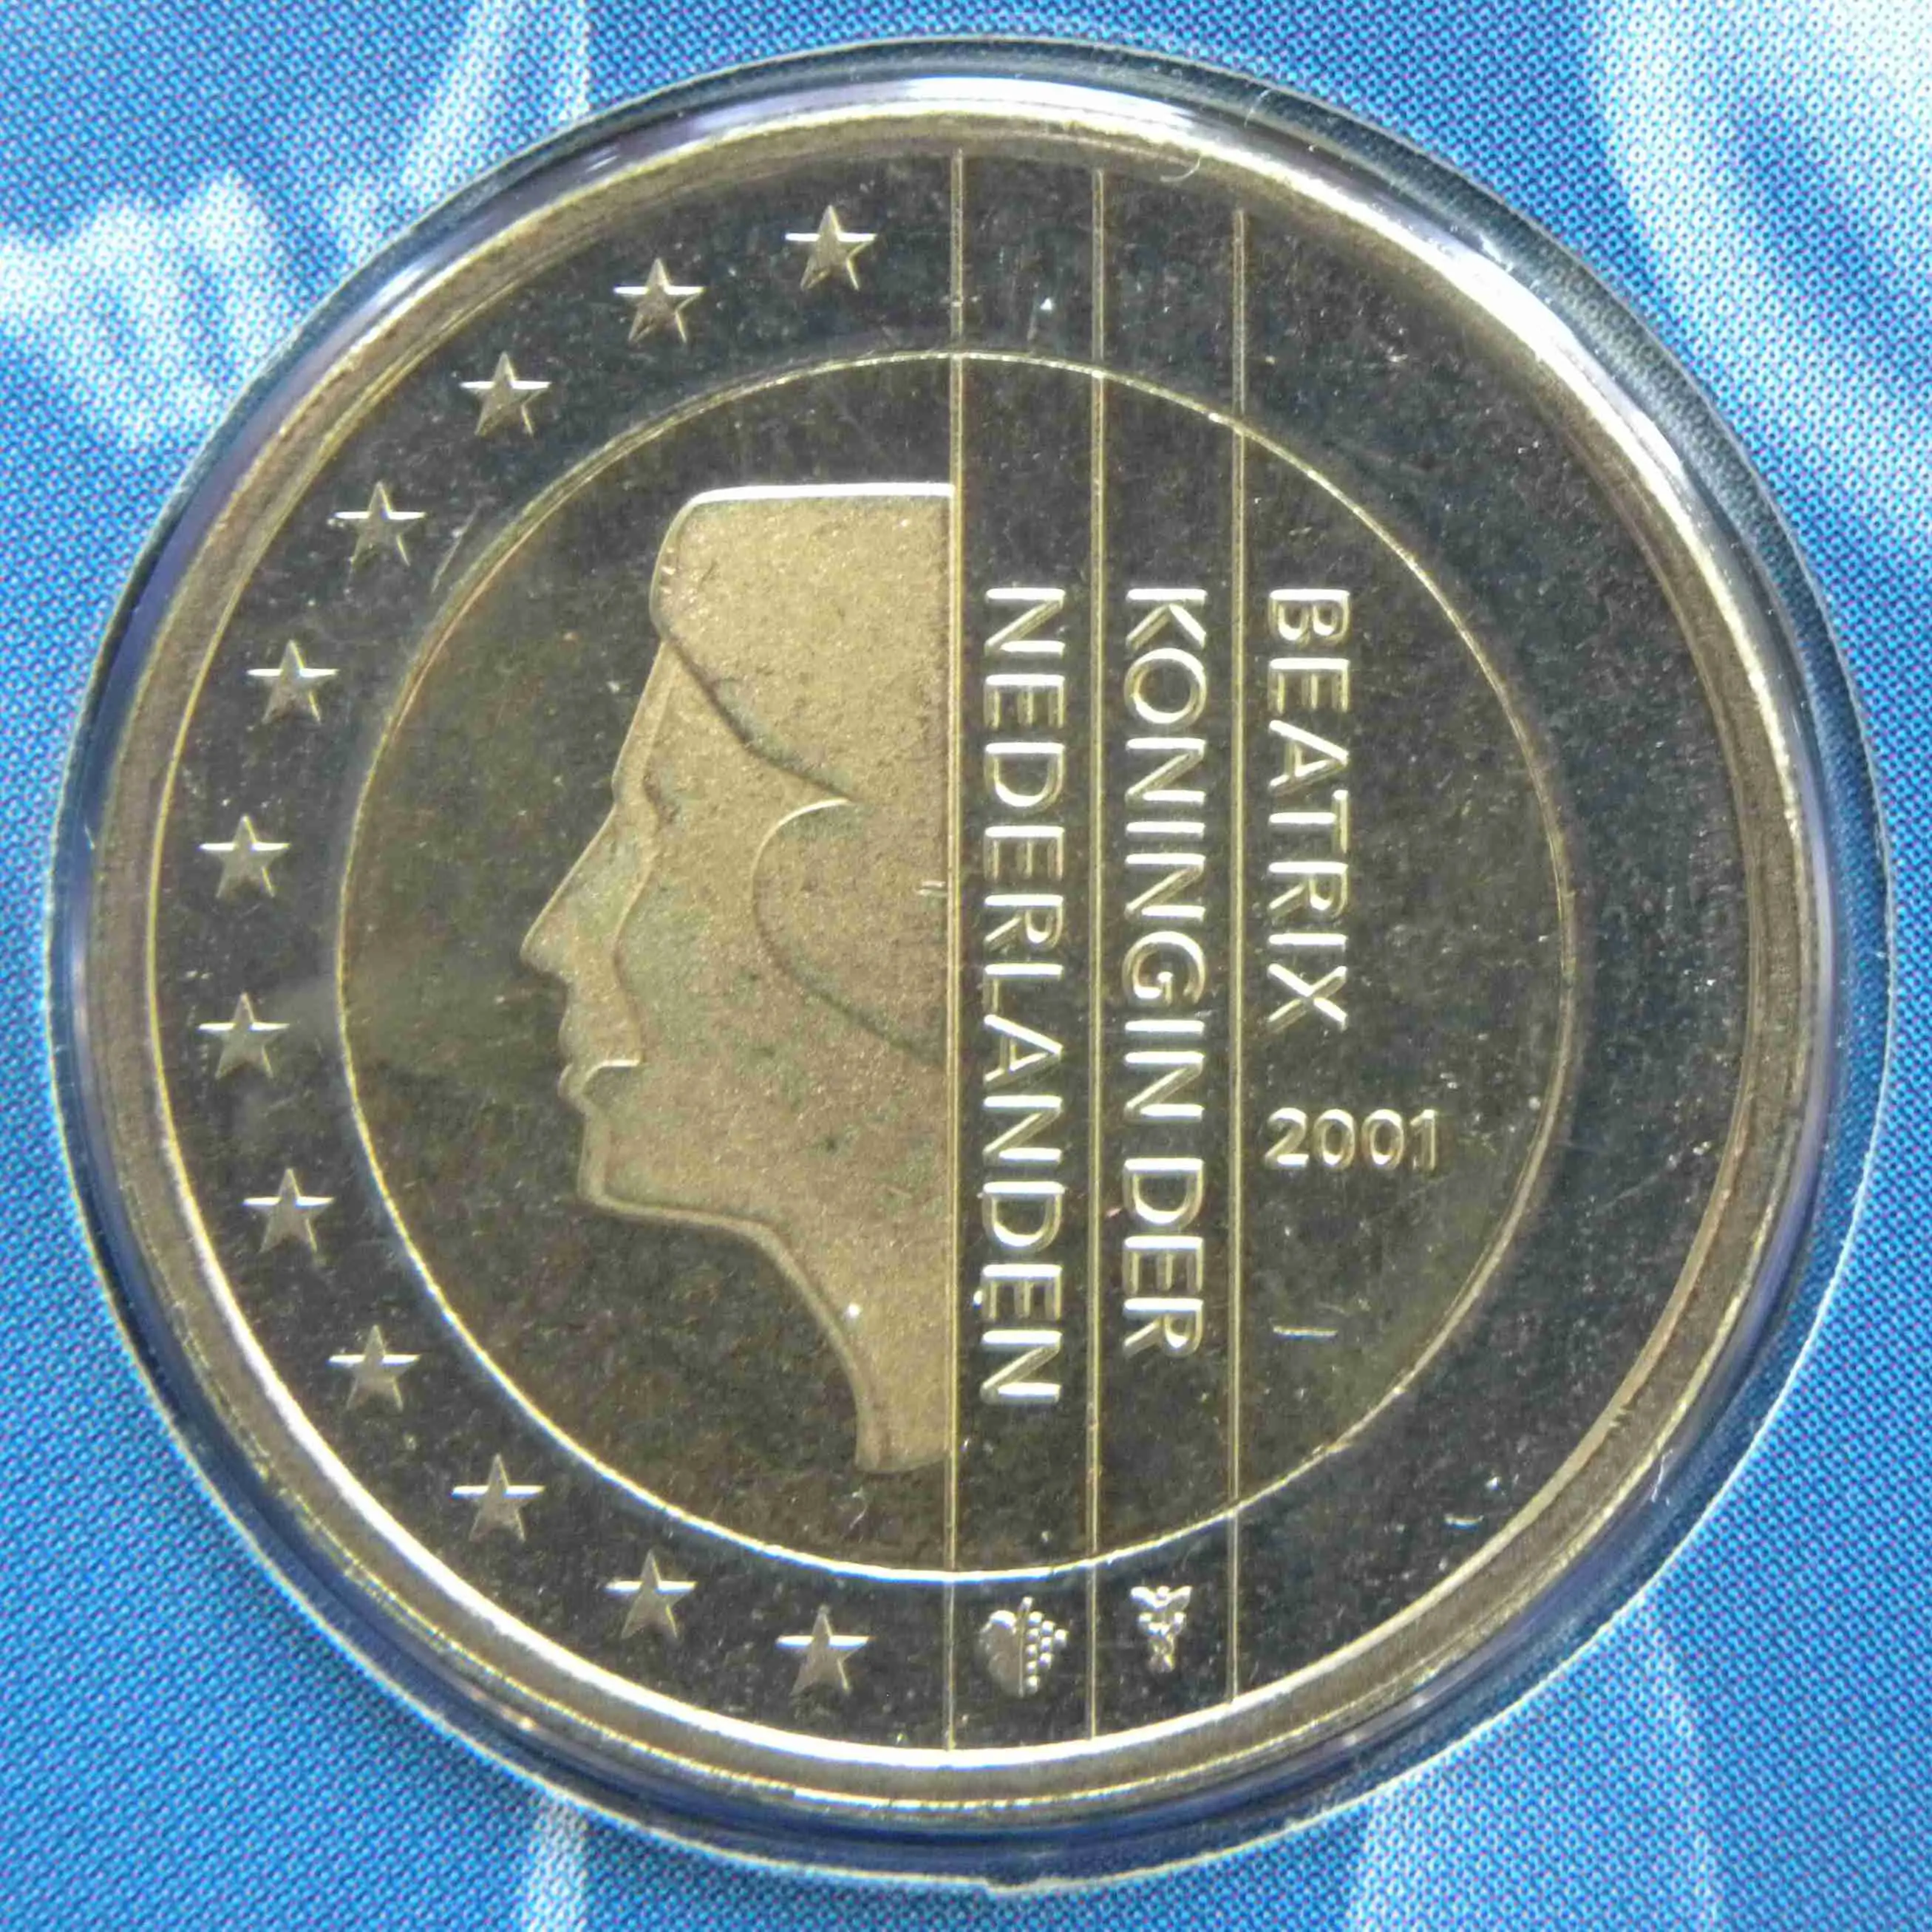 Niederlande 2 Euro Münze 2001 - euro-muenzen.tv - Der Online Euromünzen